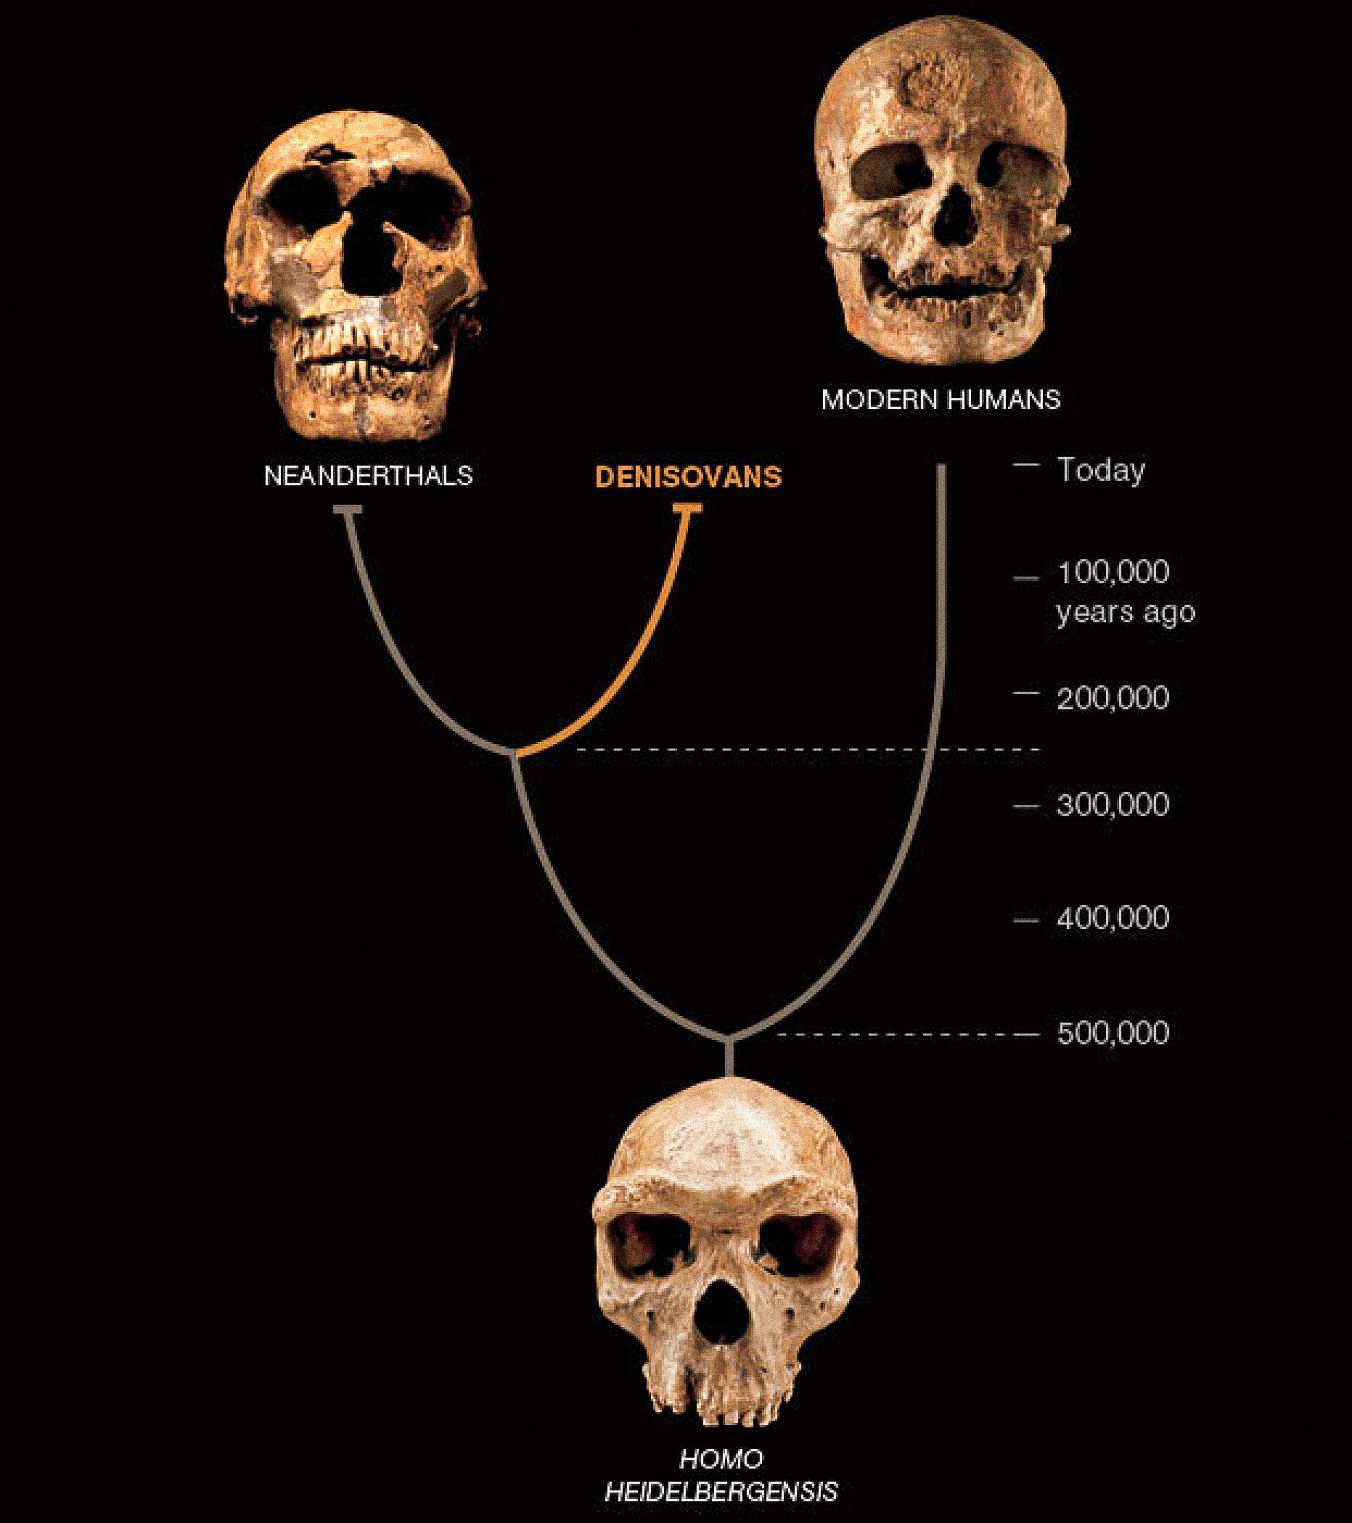 第三種人，稱為丹尼索瓦人，似乎與尼安德特人和早期現代人在亞洲共存。 後兩者是從豐富的化石和文物中得知的。 迄今為止，丹尼索瓦人的定義僅由來自一個骨片和兩顆牙齒的 DNA 定義——但它揭示了人類故事的新轉折。